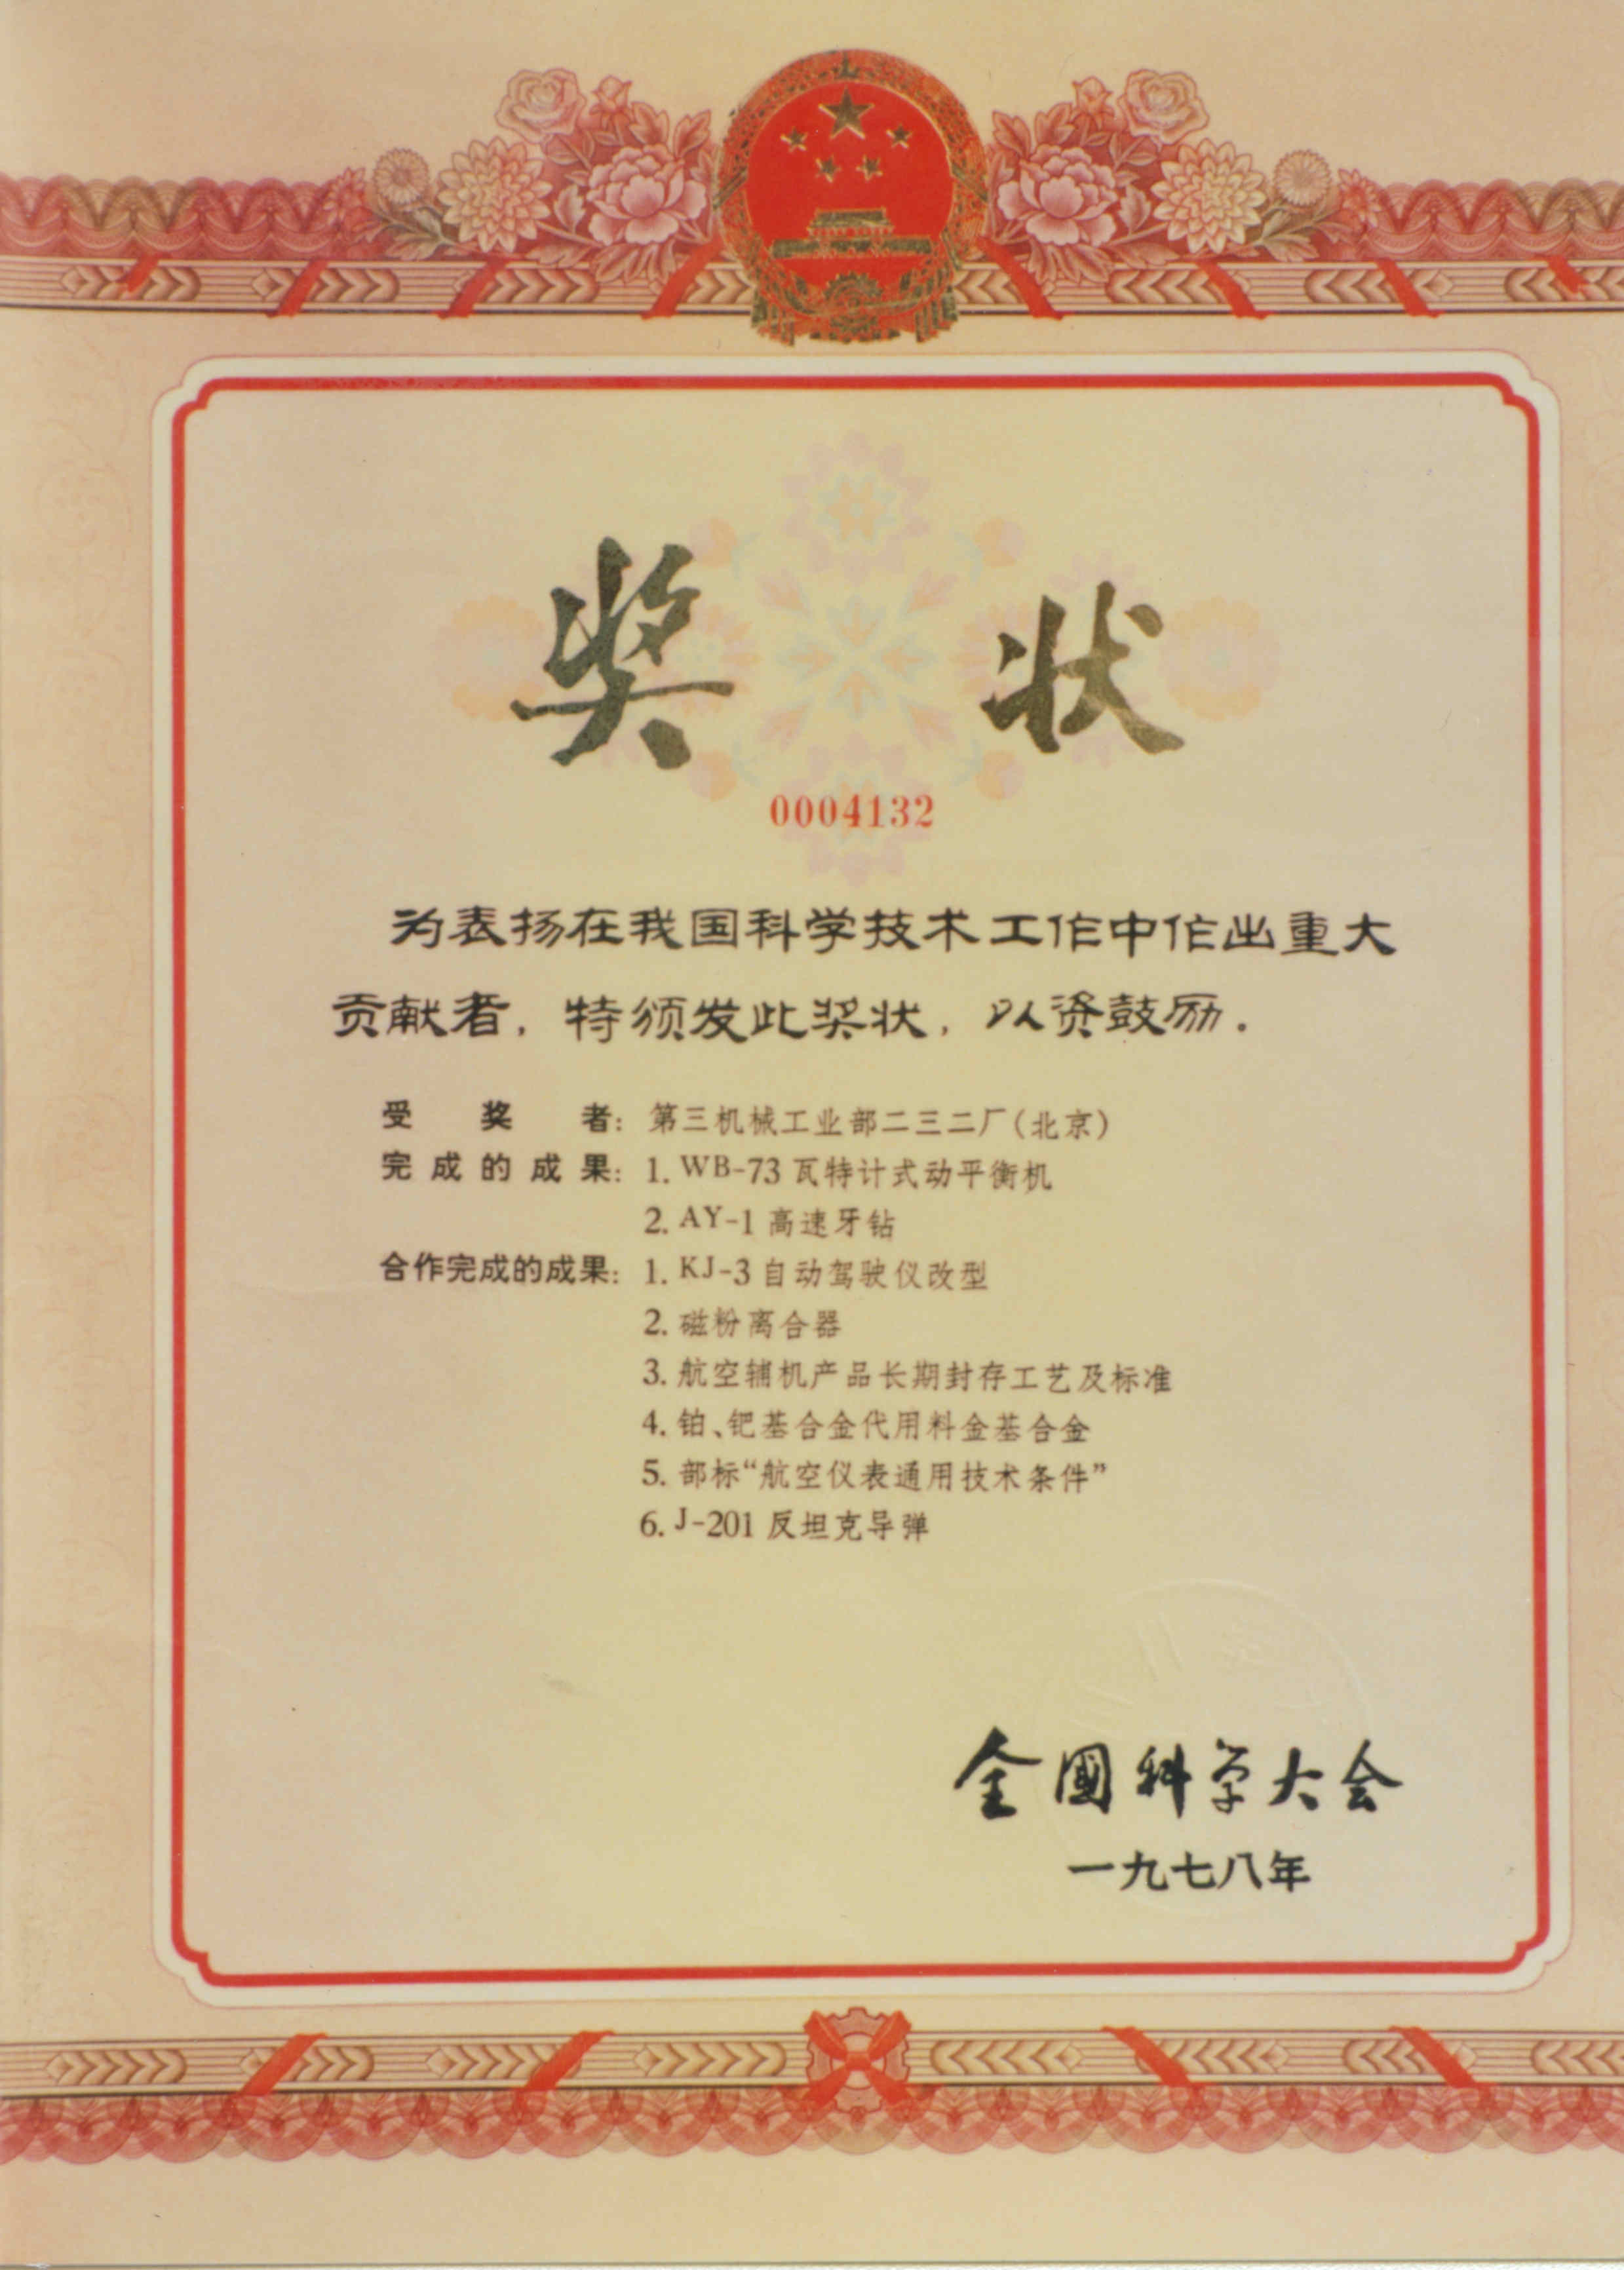 北京青云动平衡机获得全国科学技术大会奖状